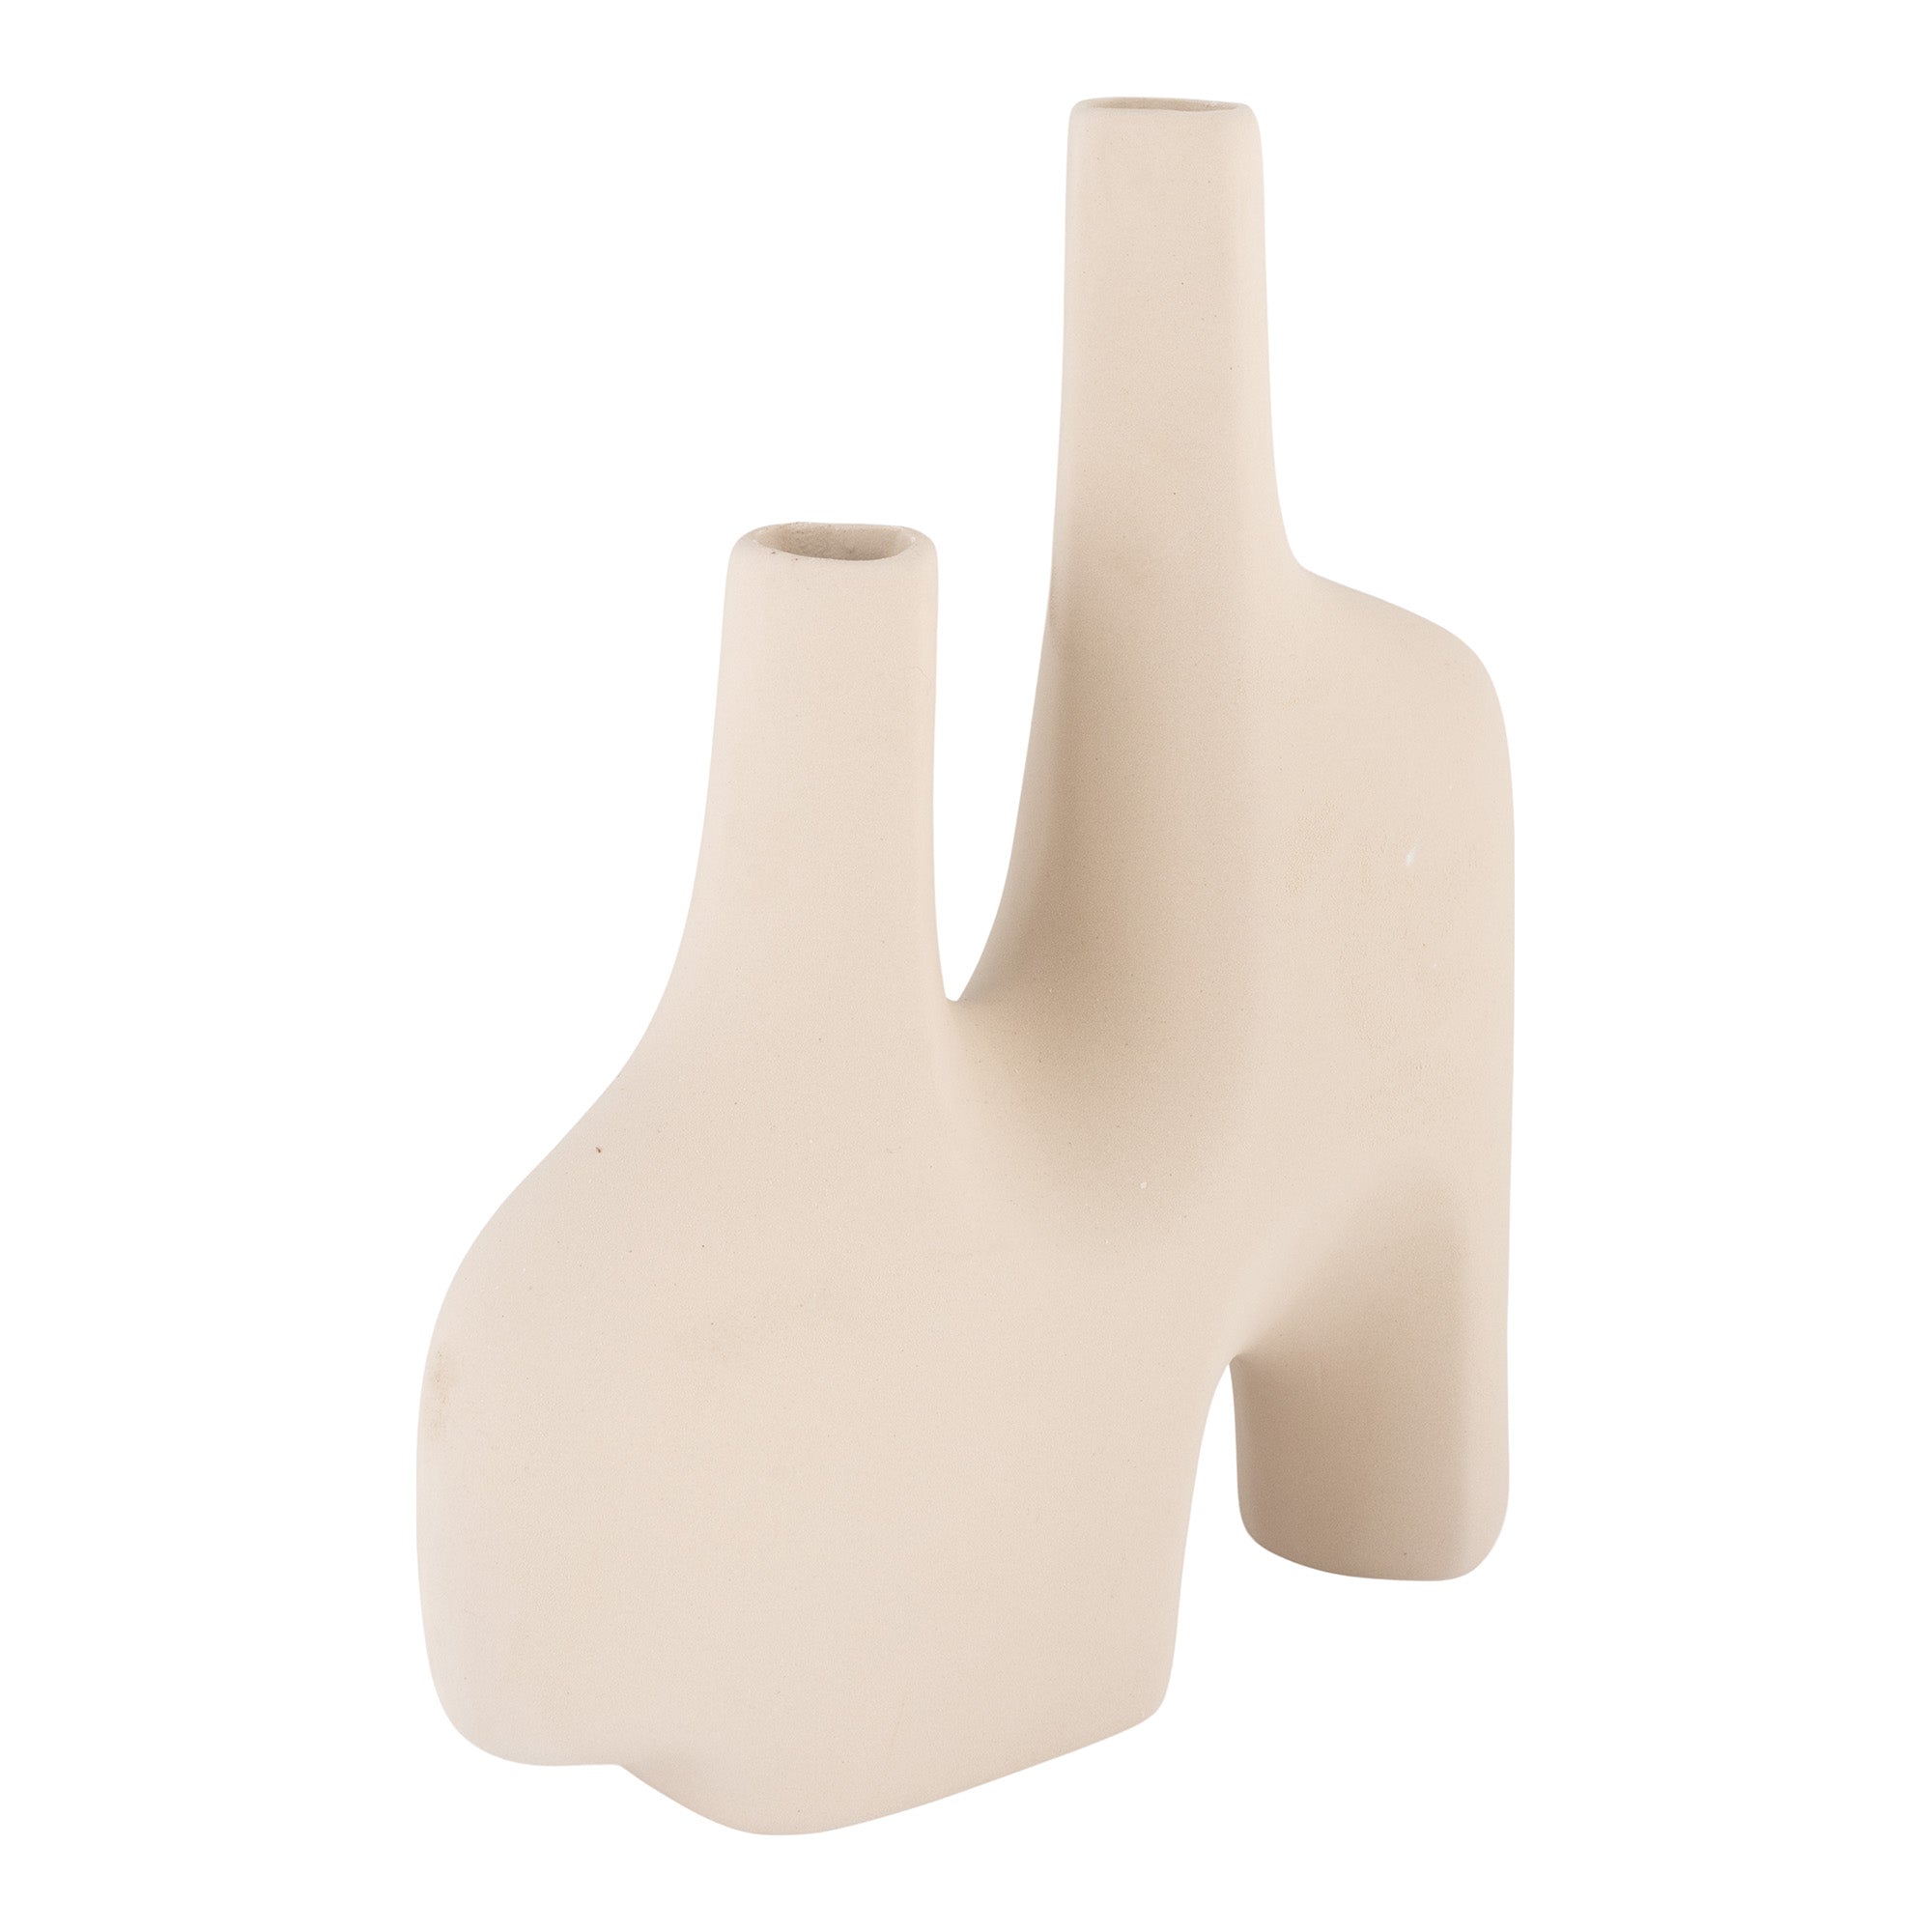 Vase - Vase I Keramik, Sand, Organisk Form Med To Åbninger, 23,5X8X27 Cm ⎮ 5713917019762 ⎮ 4441700 